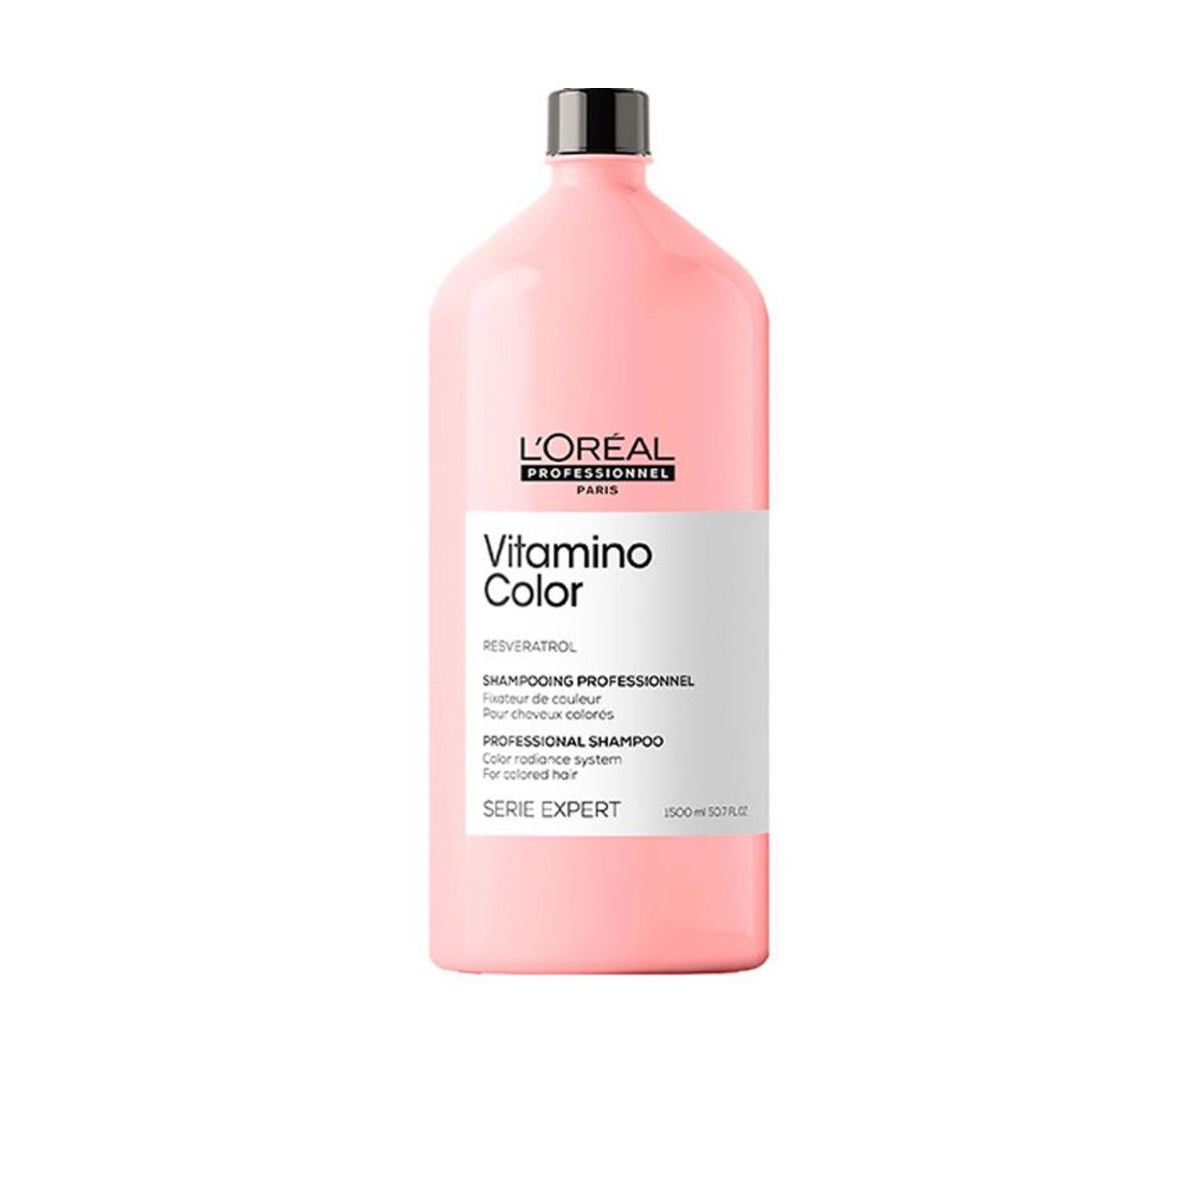 L'OREAL PROFESSIONNEL - SERIE EXPERT - VITAMINO COLOR SHAMPOO (1500ml) Shampoo capelli colorati